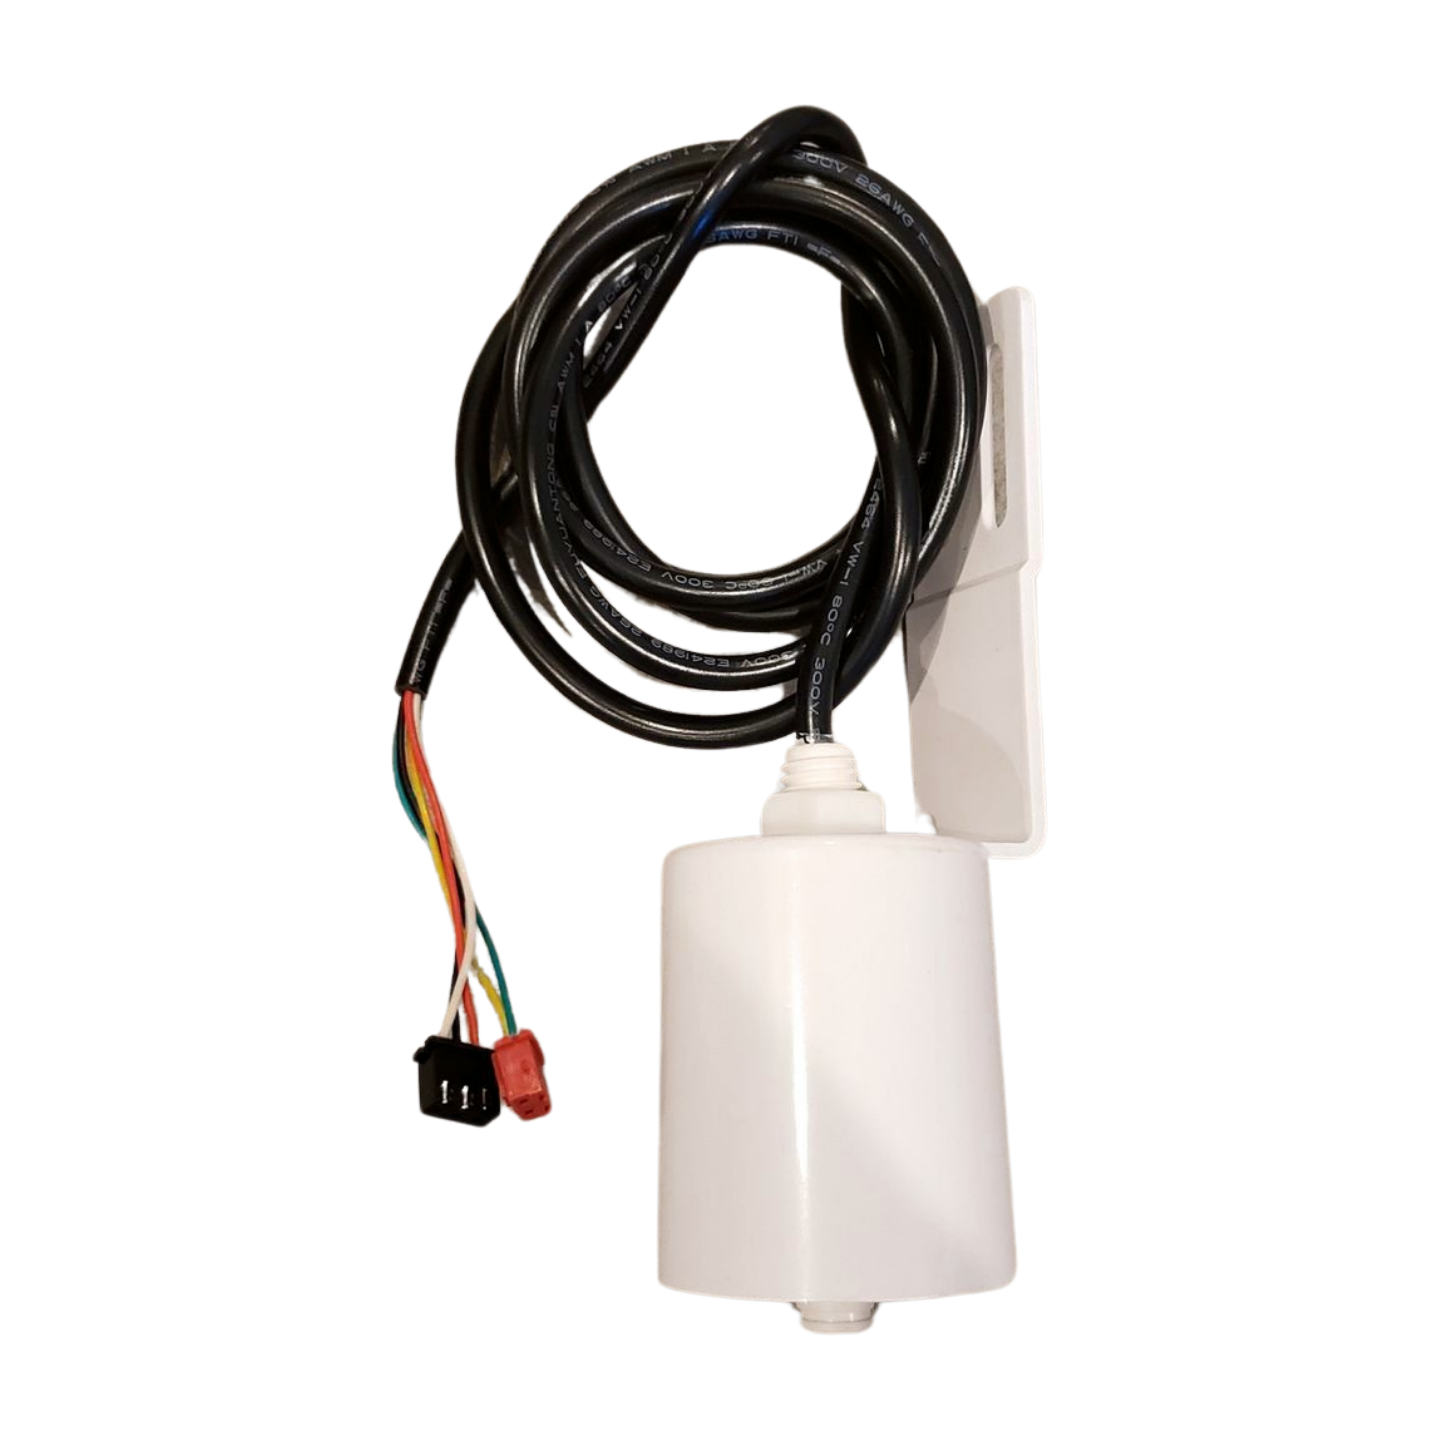 Water Level Sensor FIM-1500-5 Wire